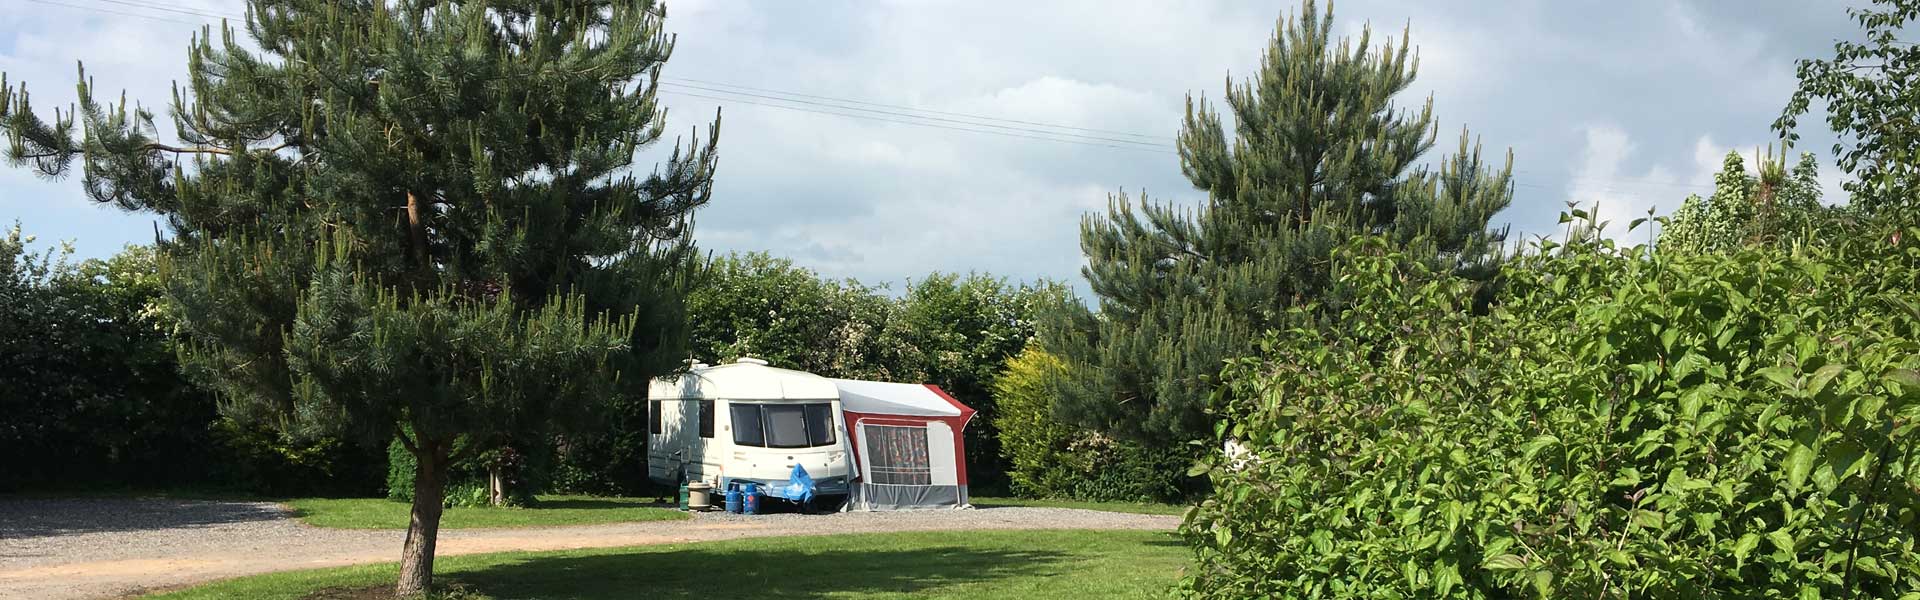 caravan site lancashire